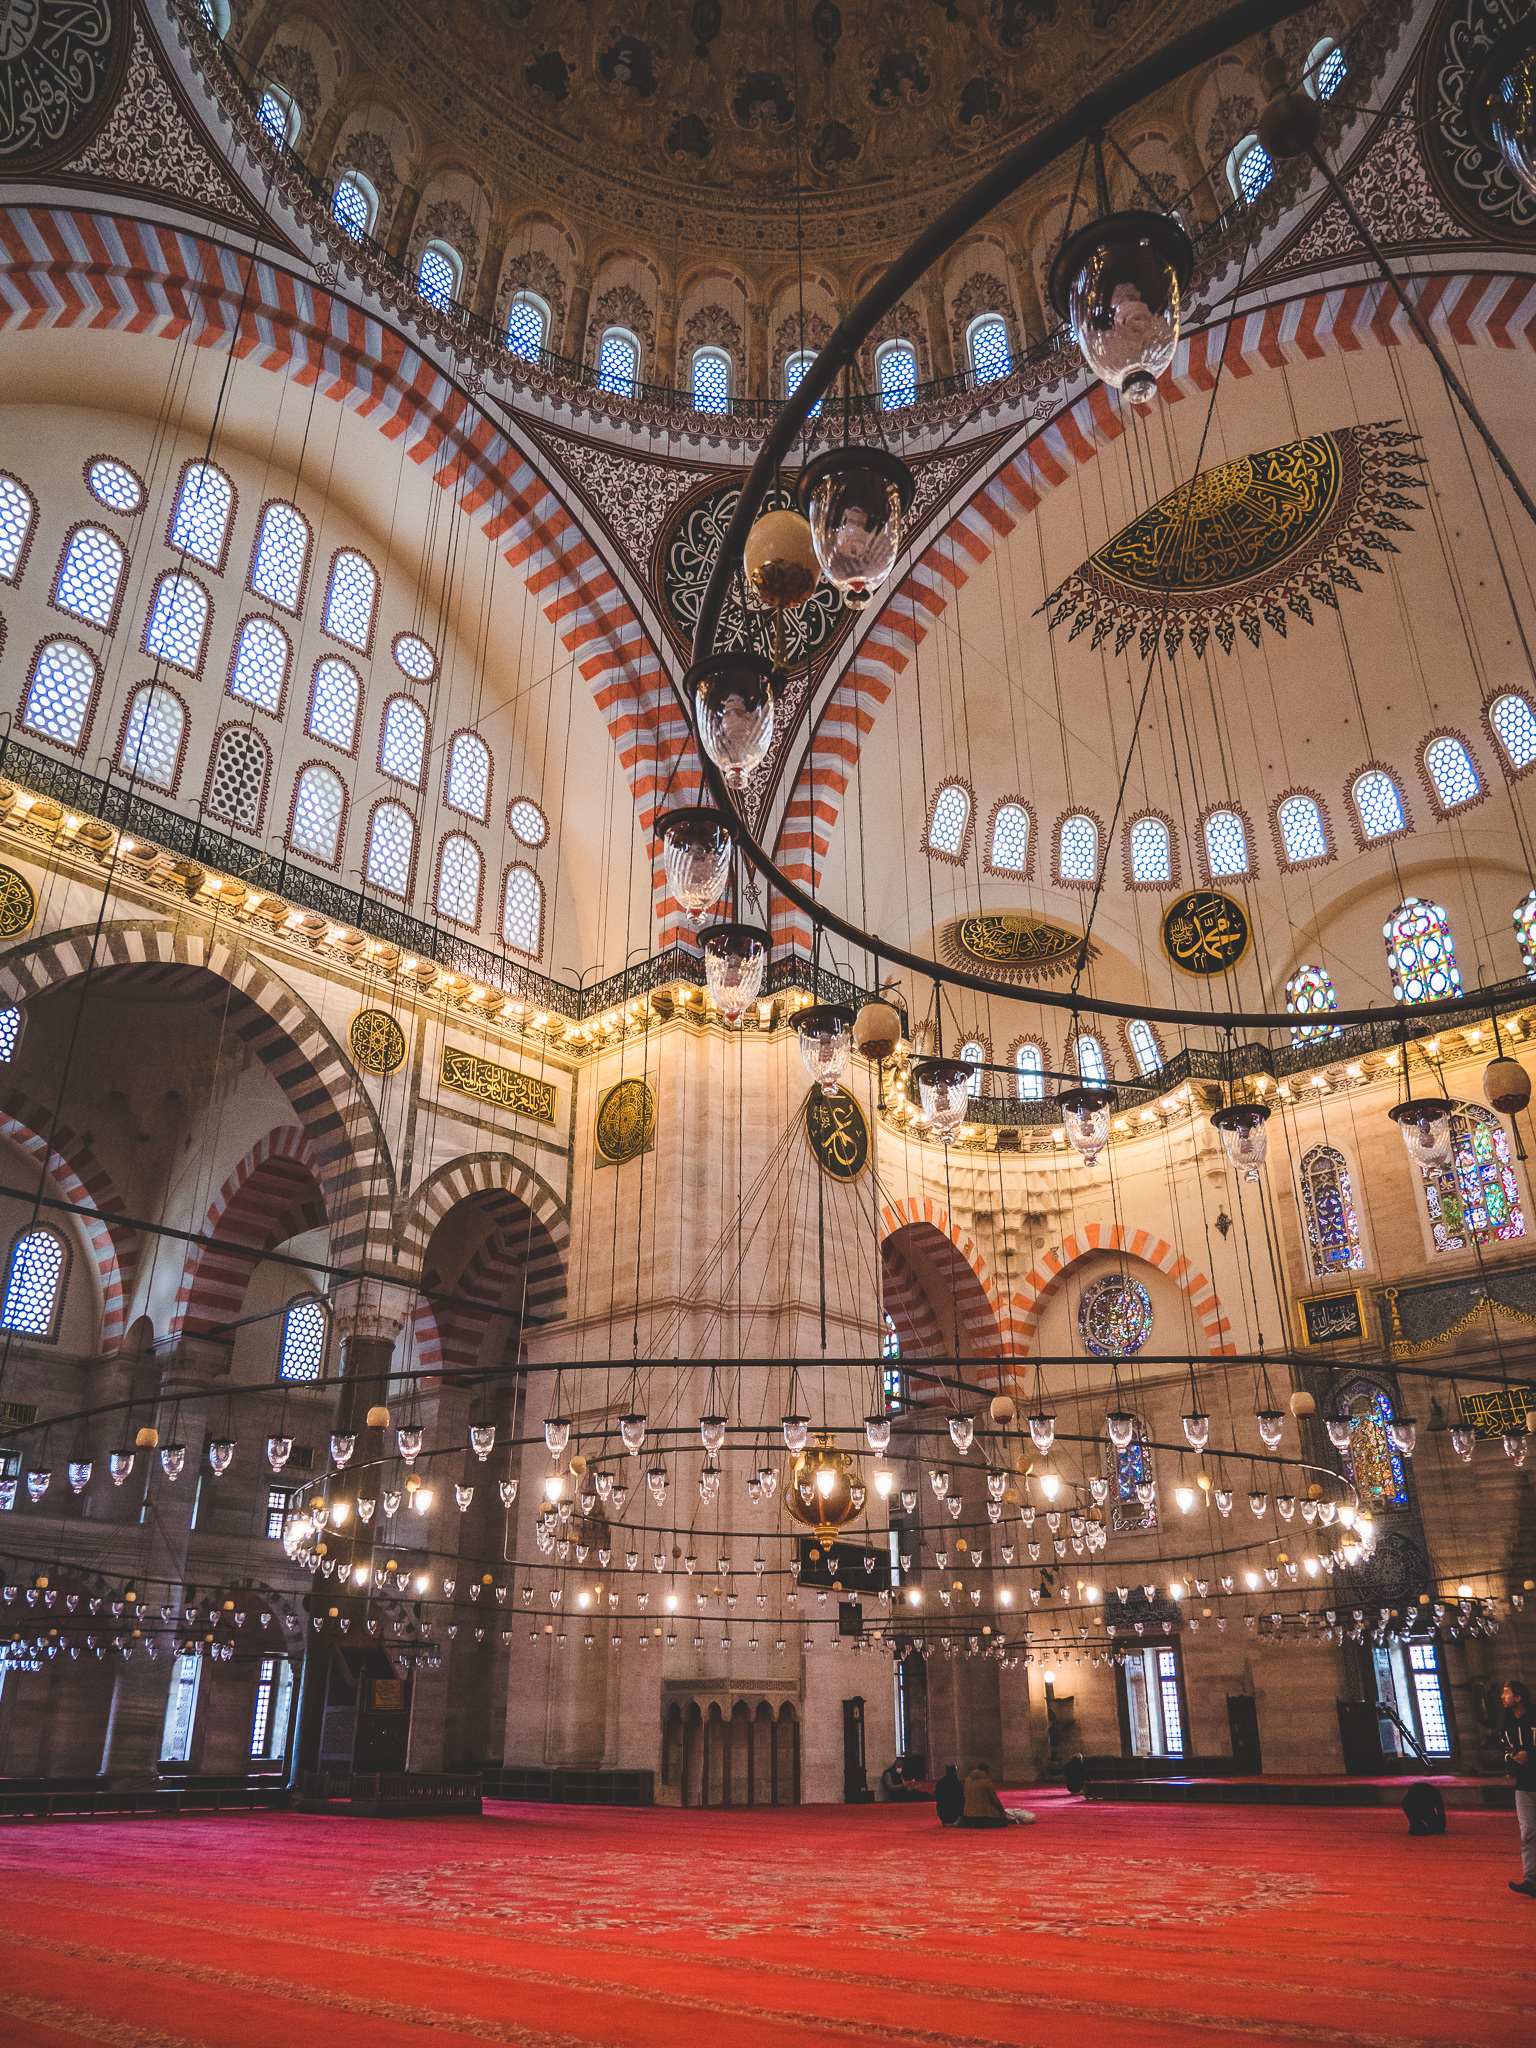 visiter Istanbul à travers la mosquée la moins connue mais la plus belle d'Istanbul : la mosquée souleymaniye